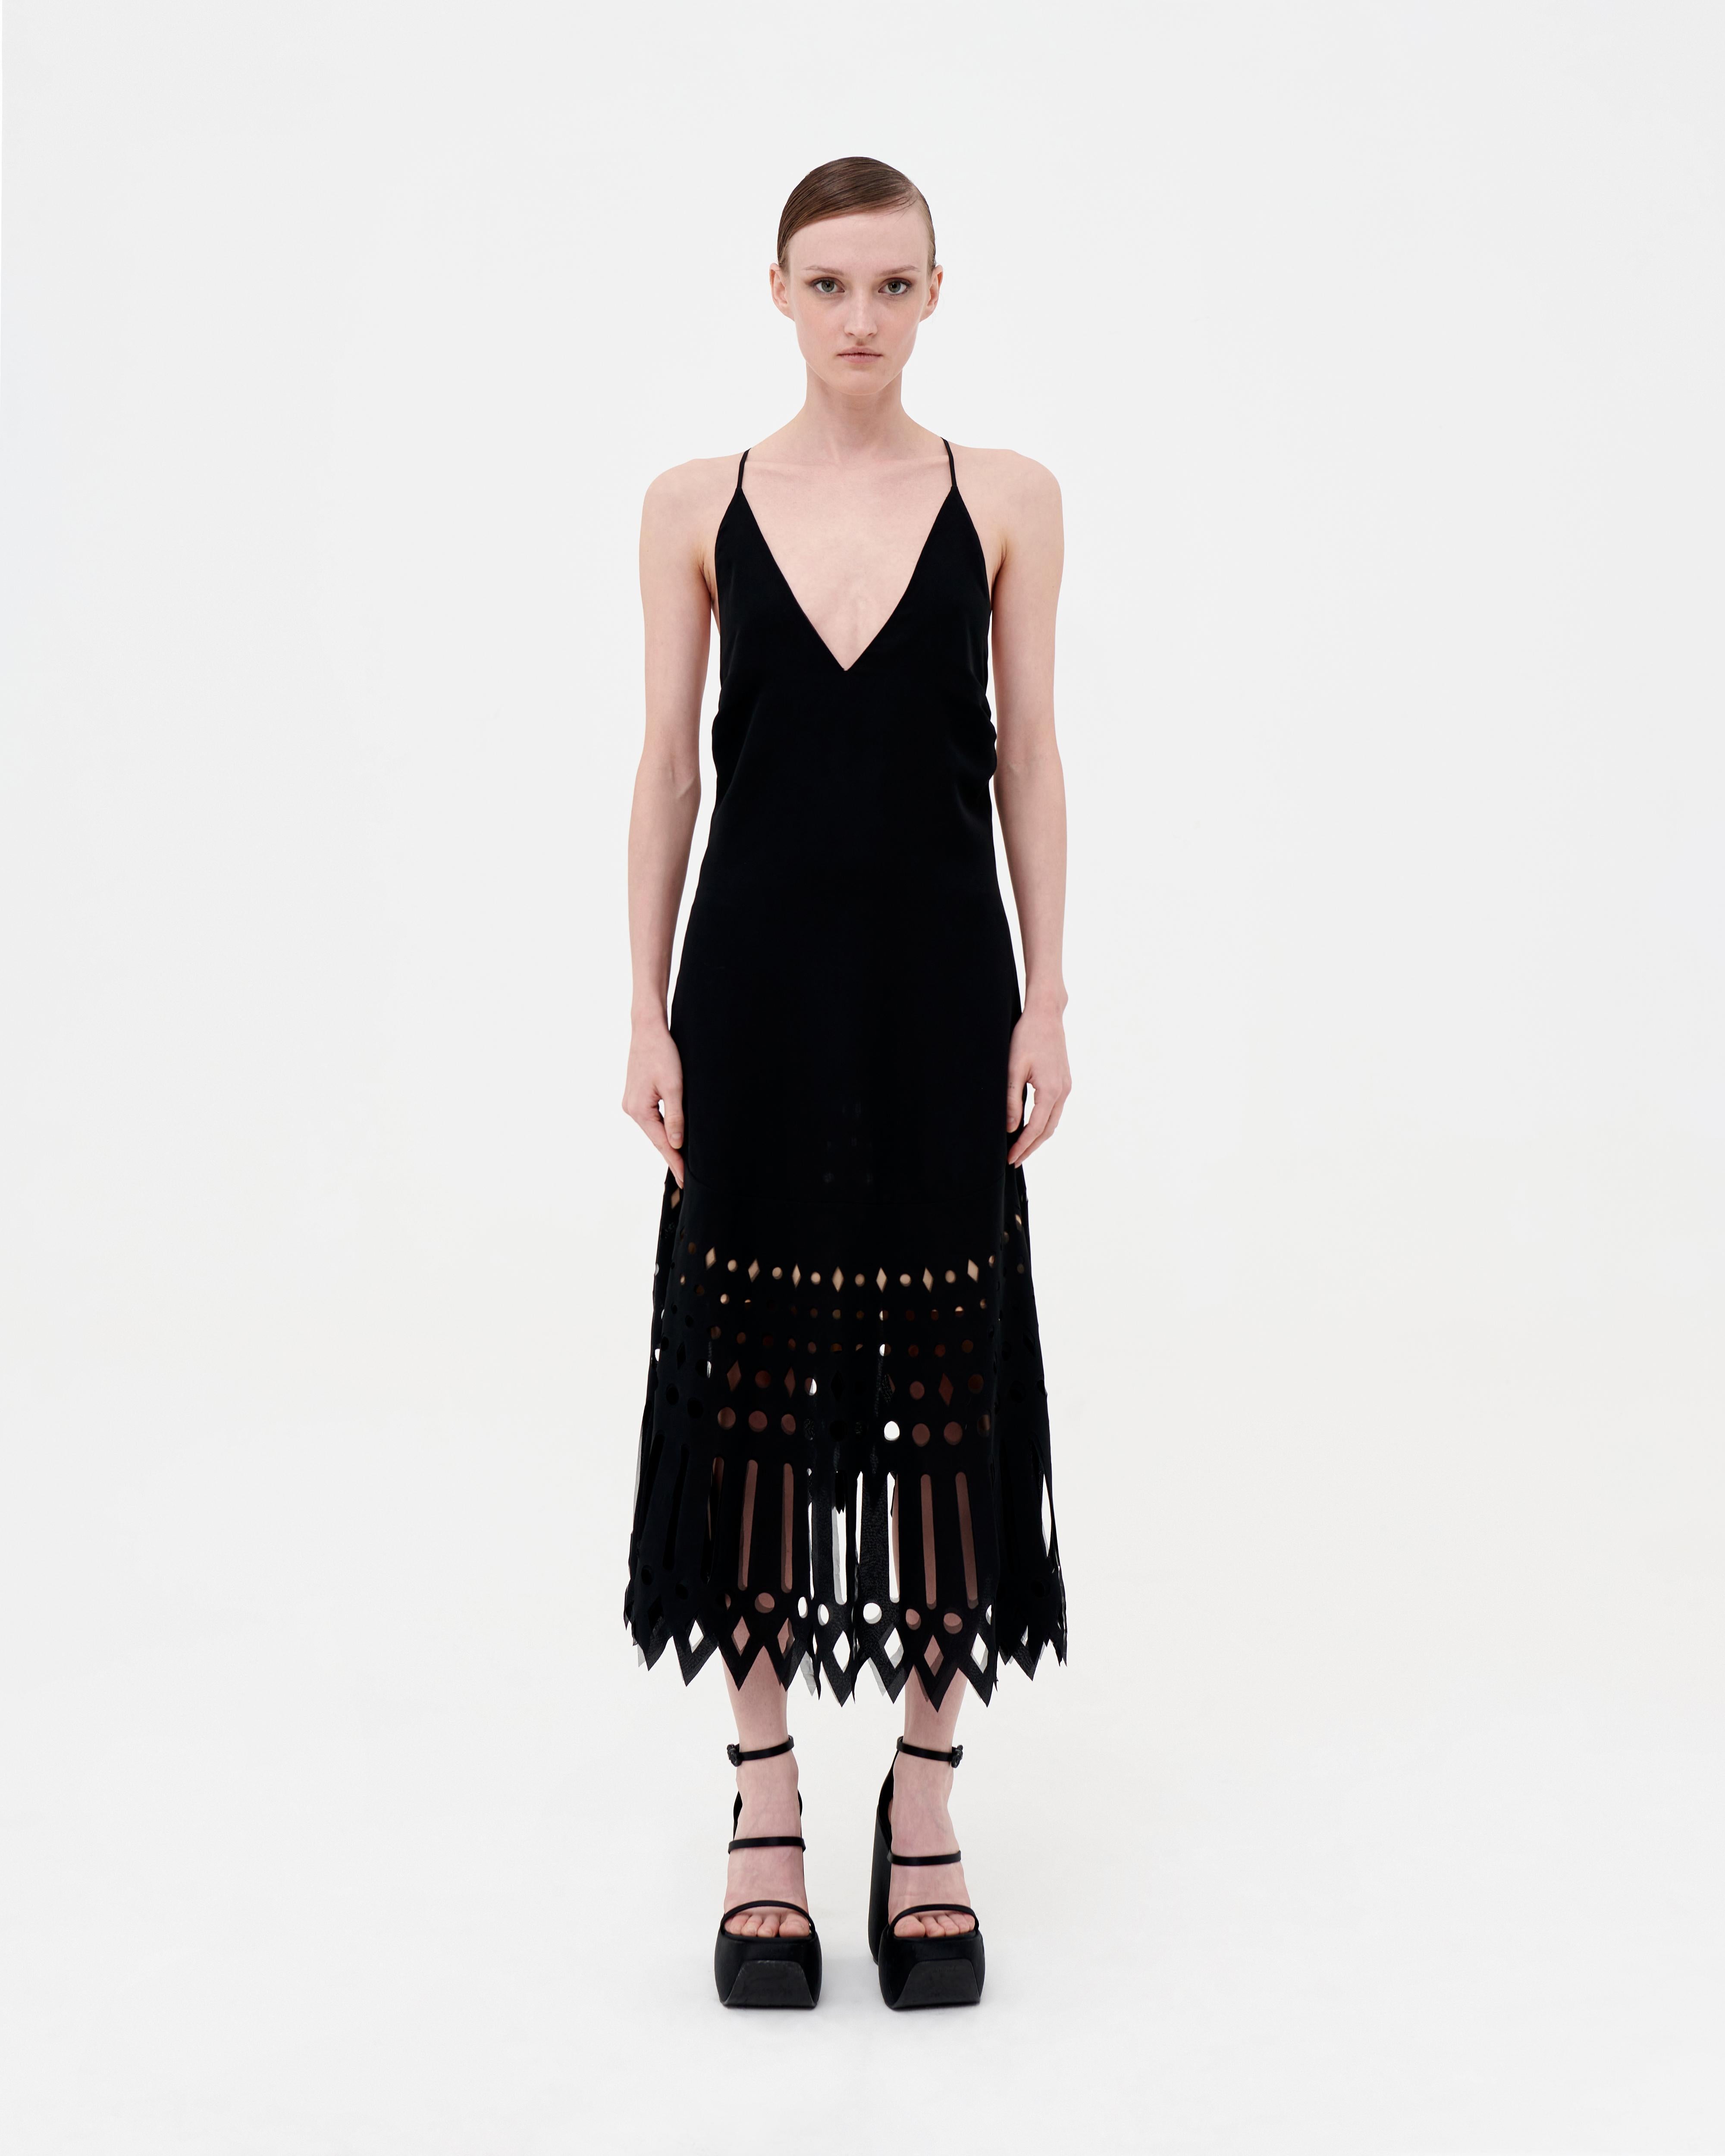 Schwarzes, tief ausgeschnittenes Kleid von Gianfranco Ferré mit geometrischem Lasermotiv. Nudefarbener Petticoat ab der Taille, rückenfrei mit schmalen Schulterträgern und asymmetrischem Ausschnitt. Kleine Mängel an den Details auf der Rückseite,